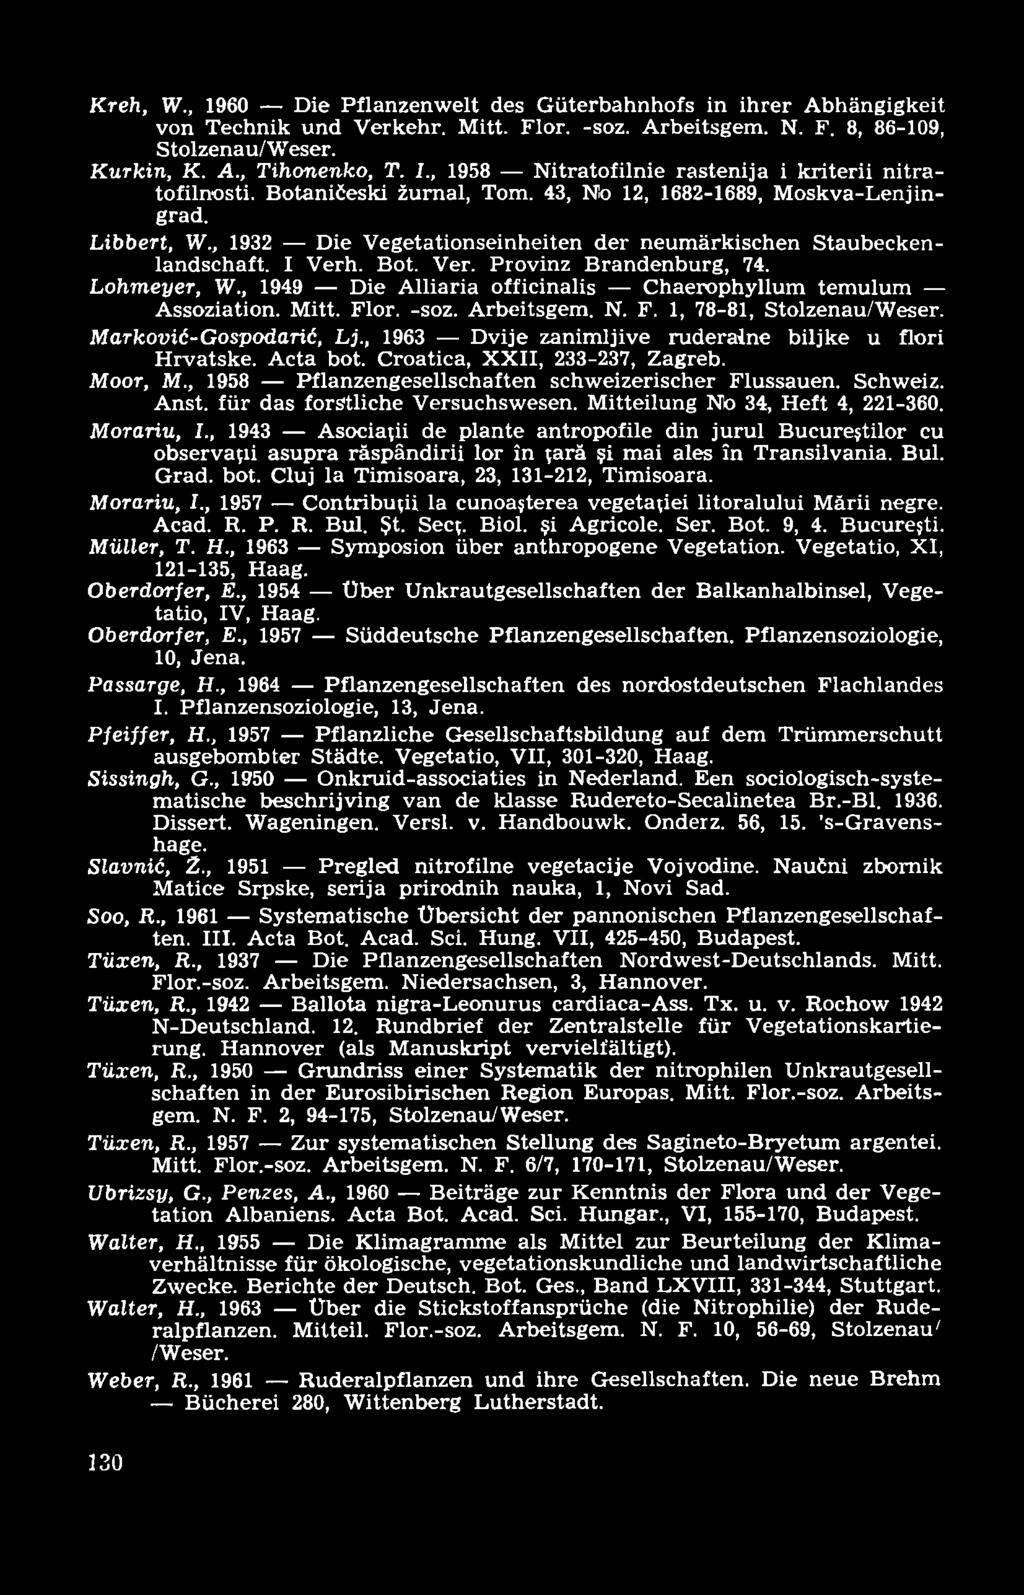 K reh, W., 1960 Die Pflanzenwelt des Güterbahnhofs in ihrer Abhängigkeit von Technik und Verkehr. Mitt. Flor. -soz. Arbeitsgem. N. F. 8, 86-109, Stolzenau/Weser. K urkin, K. A., Tihonenko, T. I.